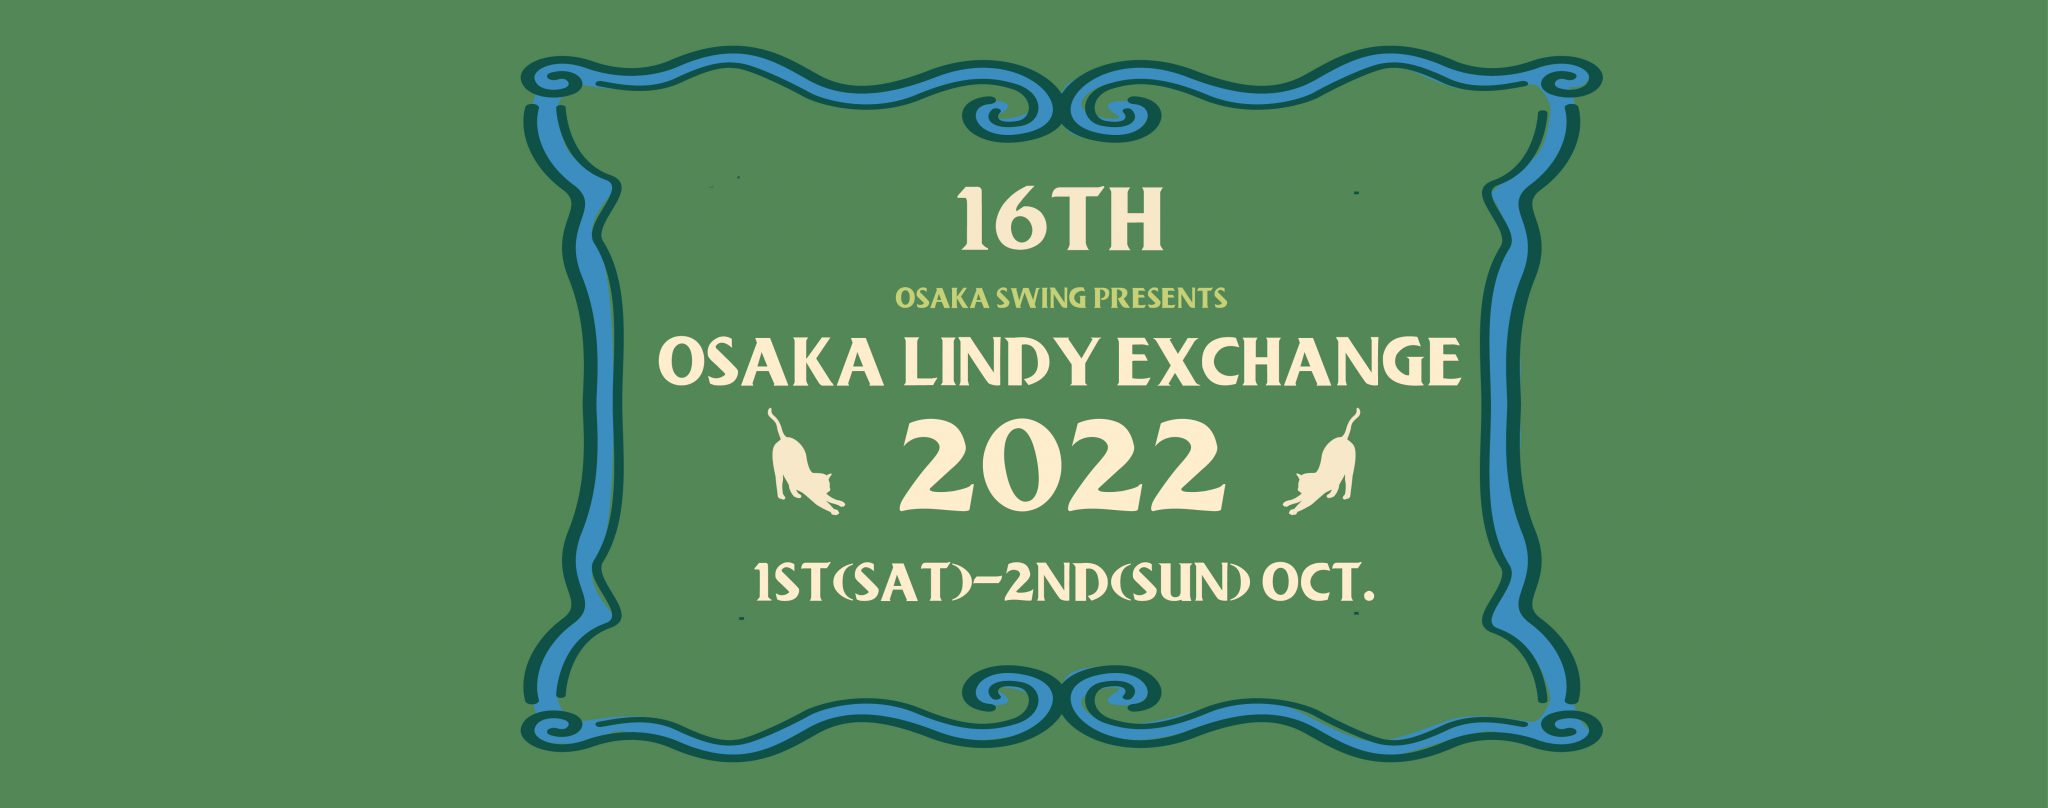 OSAKA LINDY EXCHANGE 2022 OSAKA SWING